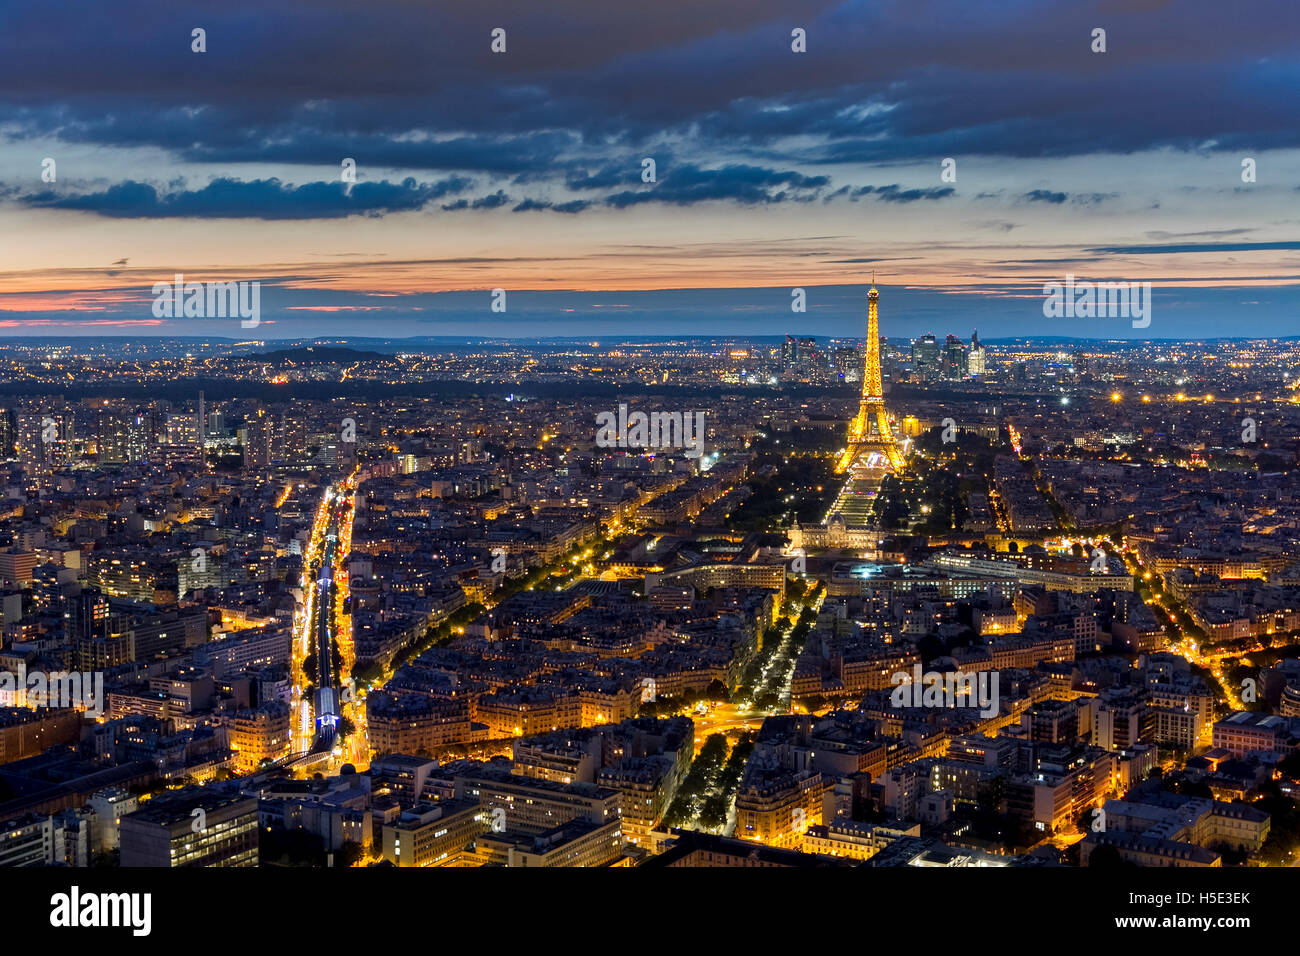 PARIS, FRANCE - Le 28 août : Vue aérienne de la Tour Eiffel illuminée la nuit le 28 août 2015 à Paris, France Banque D'Images